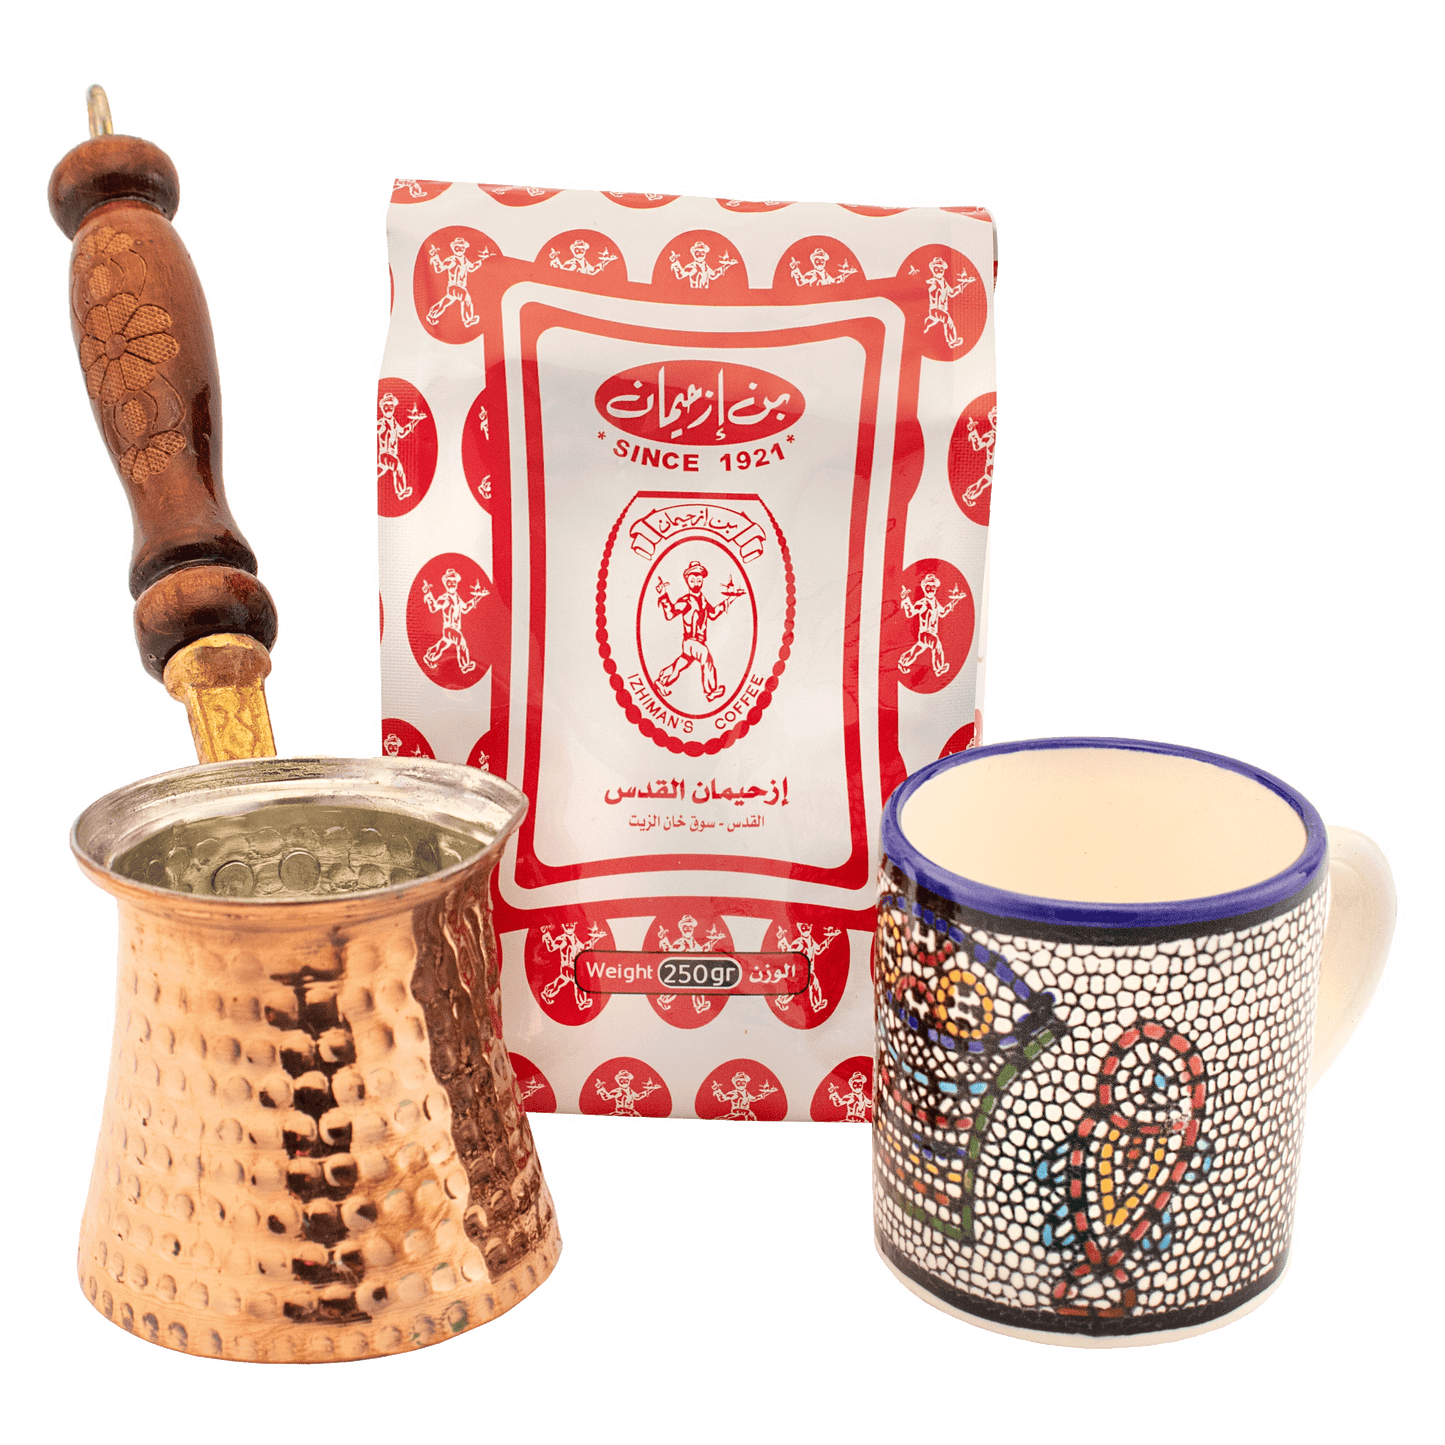 Fish and loaves mug Turkish coffee gift set, small